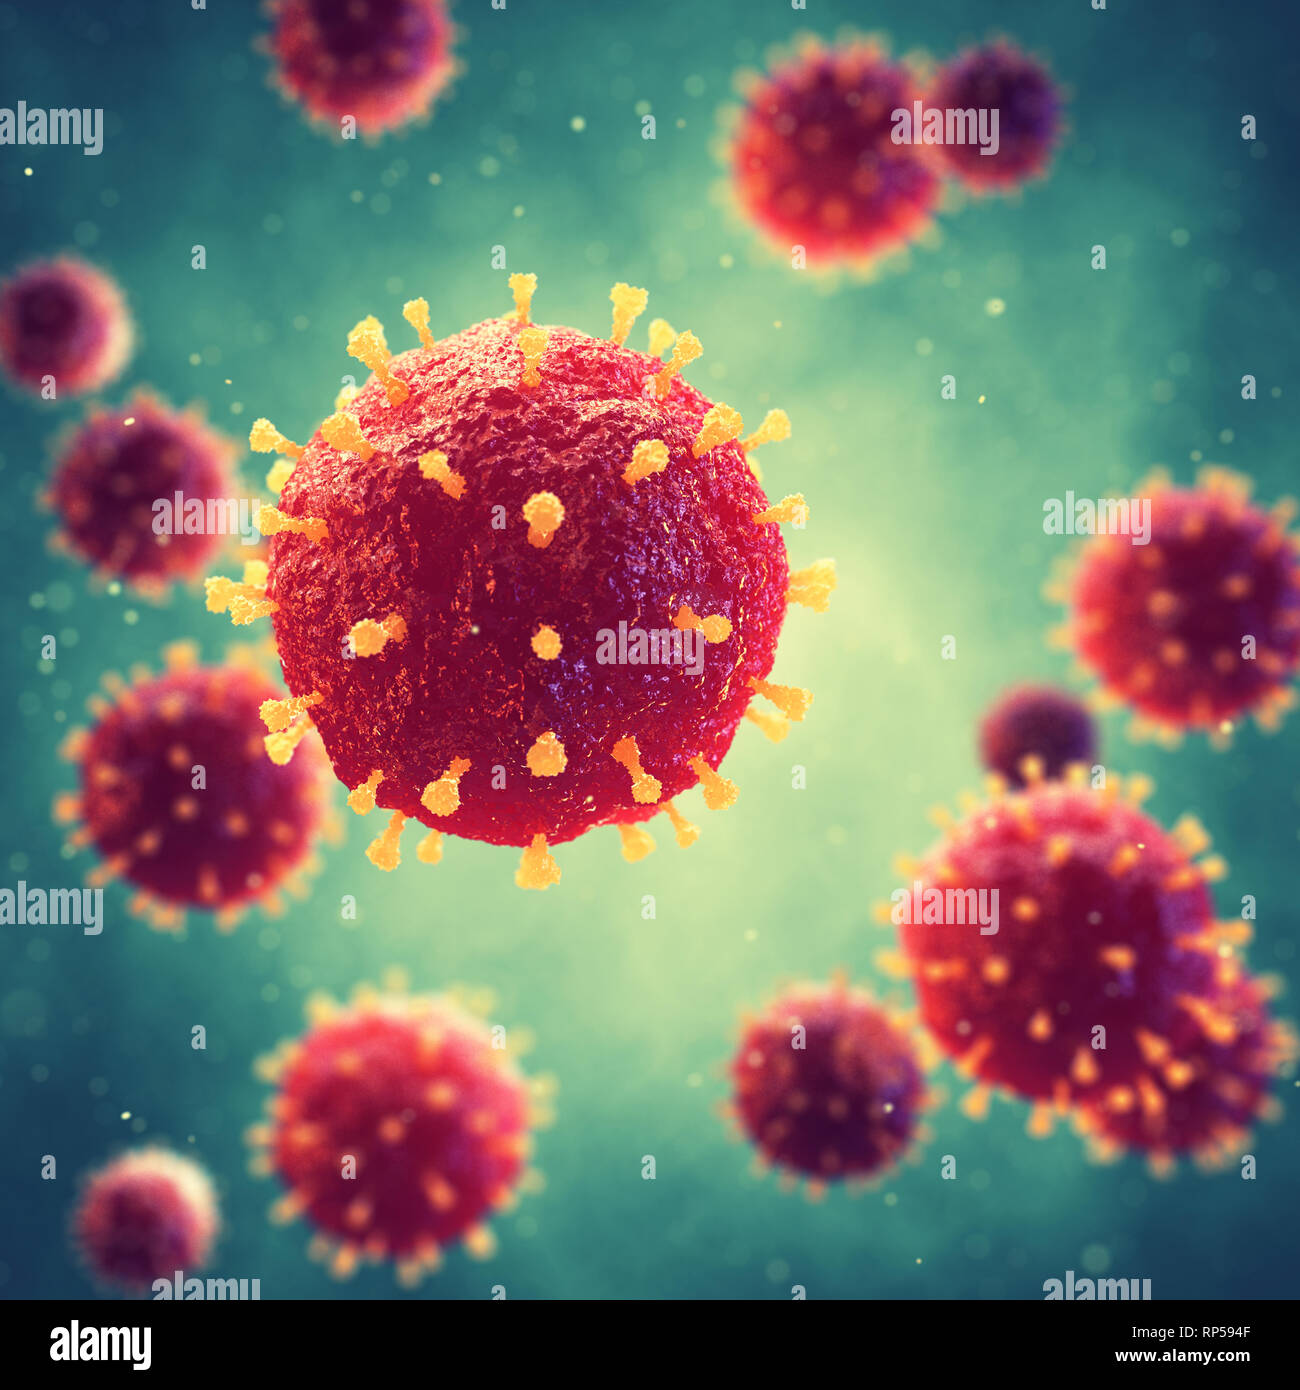 Les virus pathogènes qui causent l'infection dans l'organisme hôte, foyer de maladie virale Banque D'Images